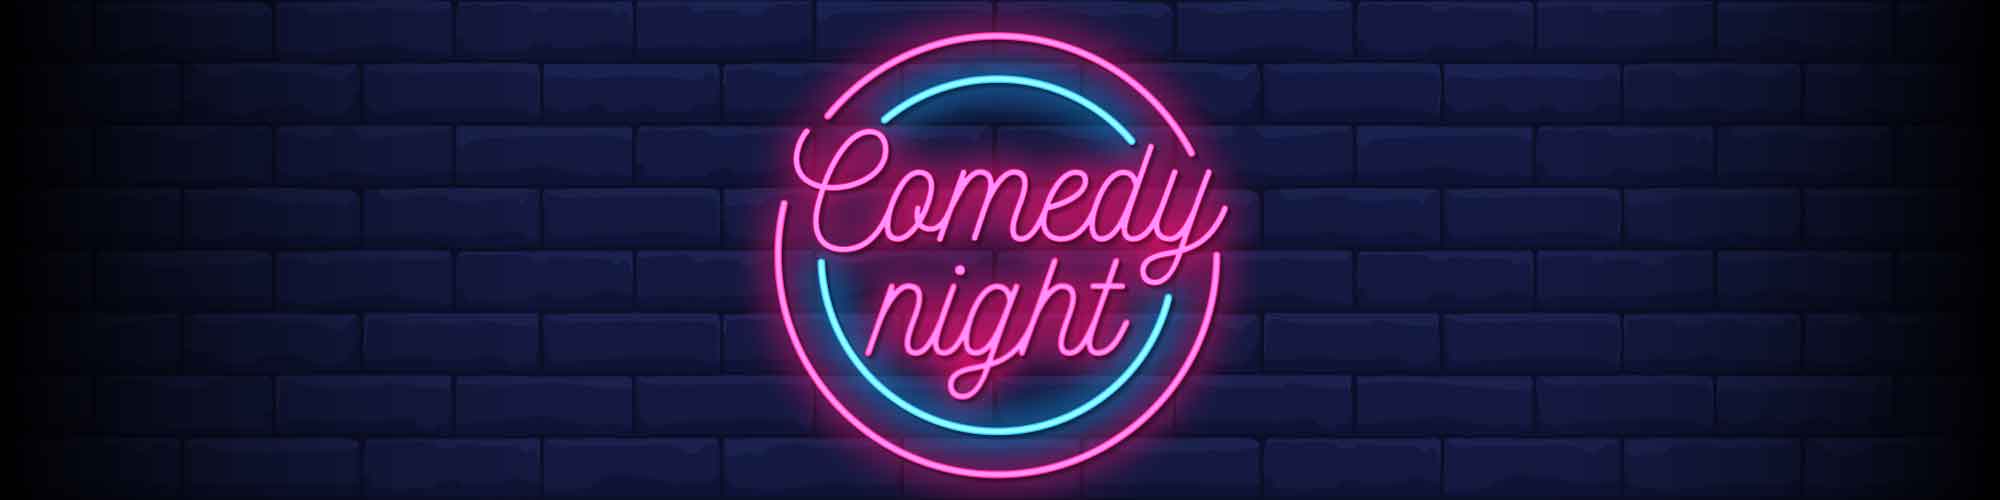 Comedy Night Vectors by Vecteezy